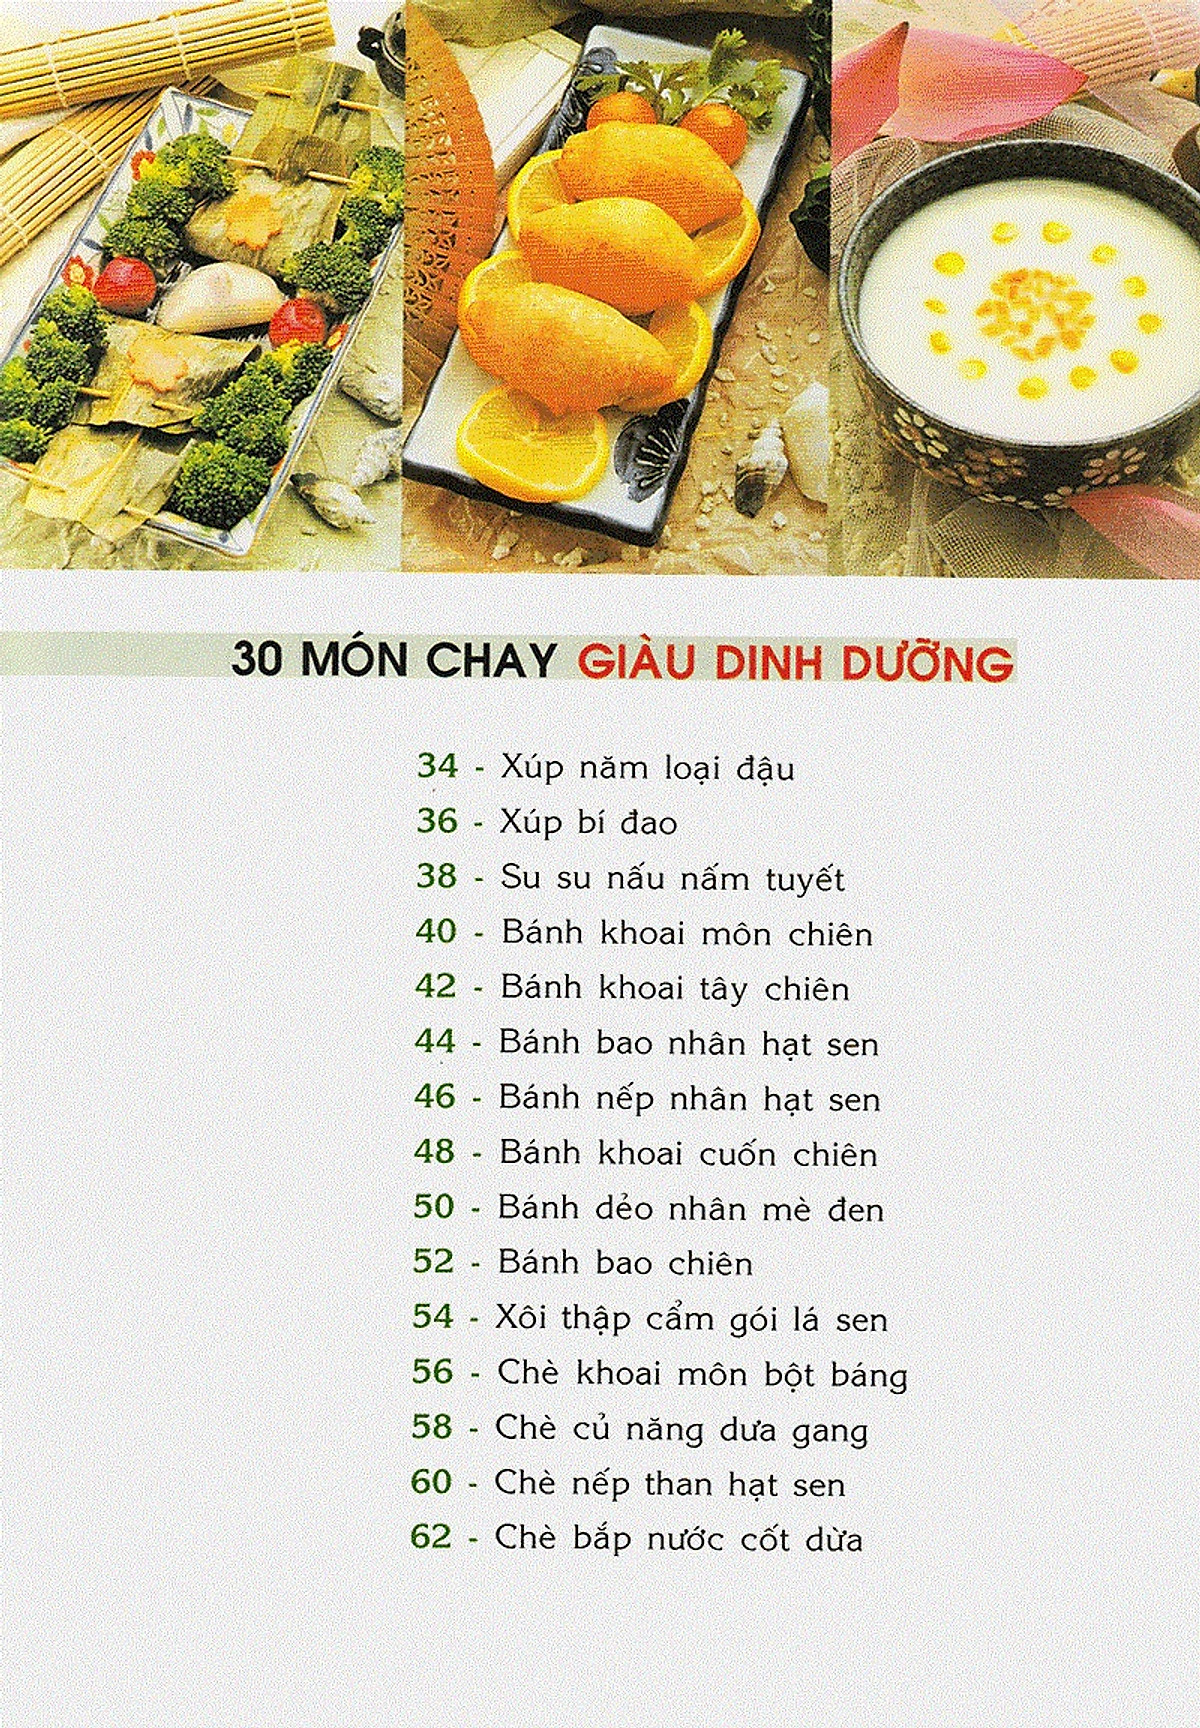 30 Món Chay Giàu Dinh Dưỡng - VT